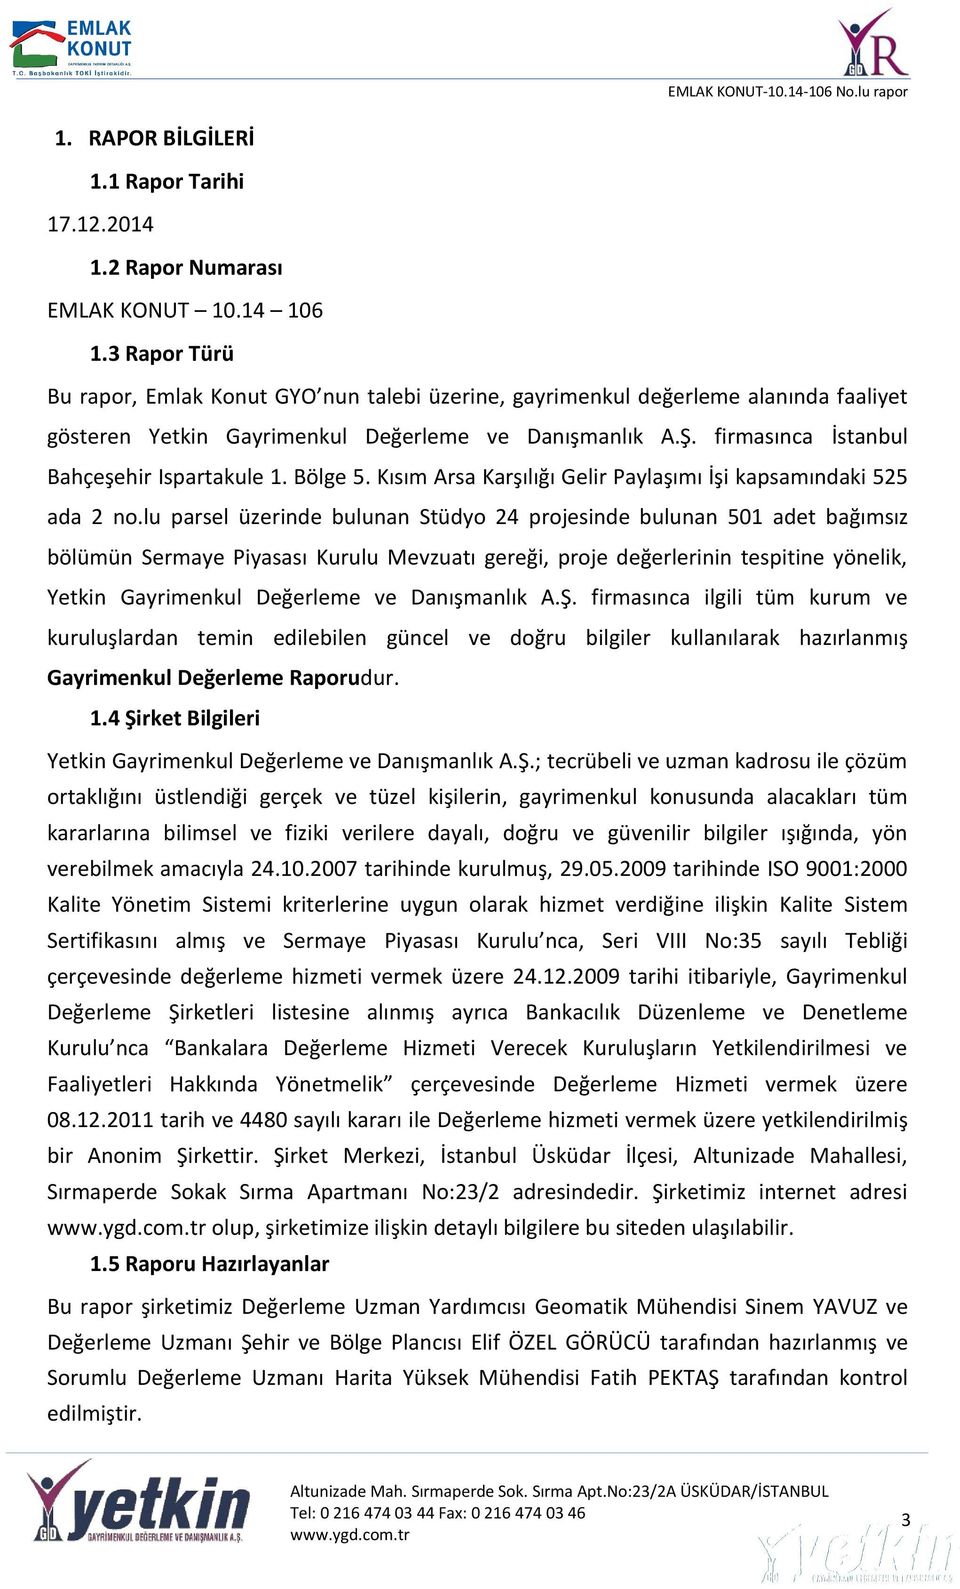 firmasınca İstanbul Bahçeşehir Ispartakule 1. Bölge 5. Kısım Arsa Karşılığı Gelir Paylaşımı İşi kapsamındaki 525 ada 2 no.